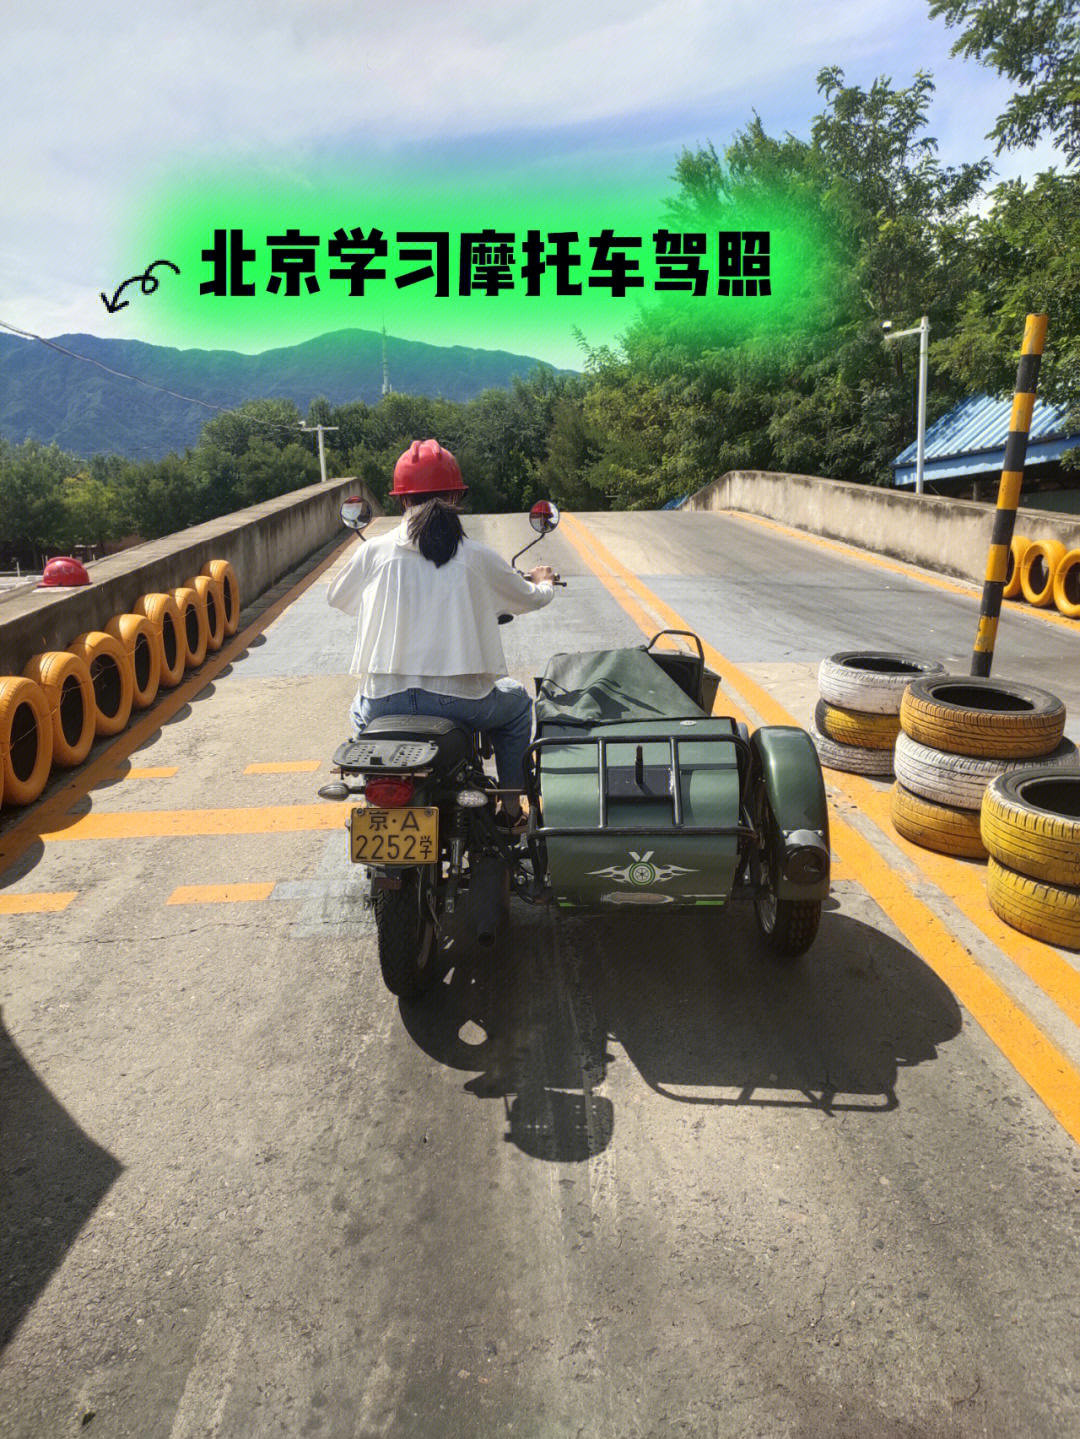 北京学习摩托车驾照驾校学驾照